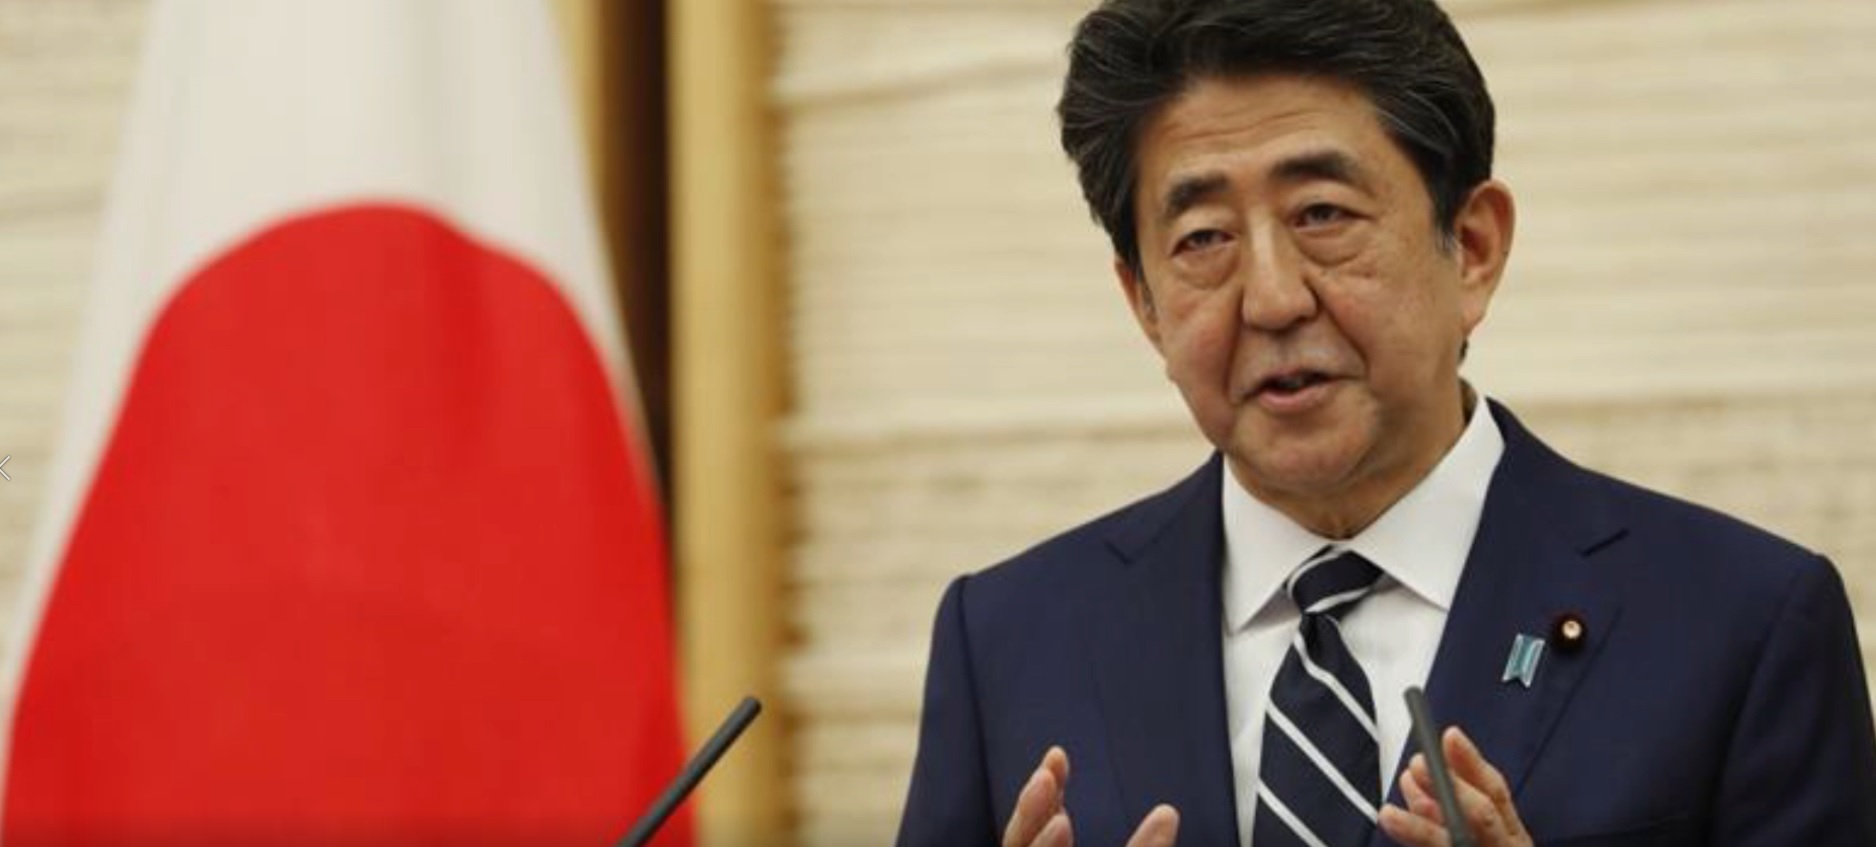 स्वास्थ्य समस्या देखिएपछि जापानी प्रधानमन्त्री आबेले राजीनामा दिने